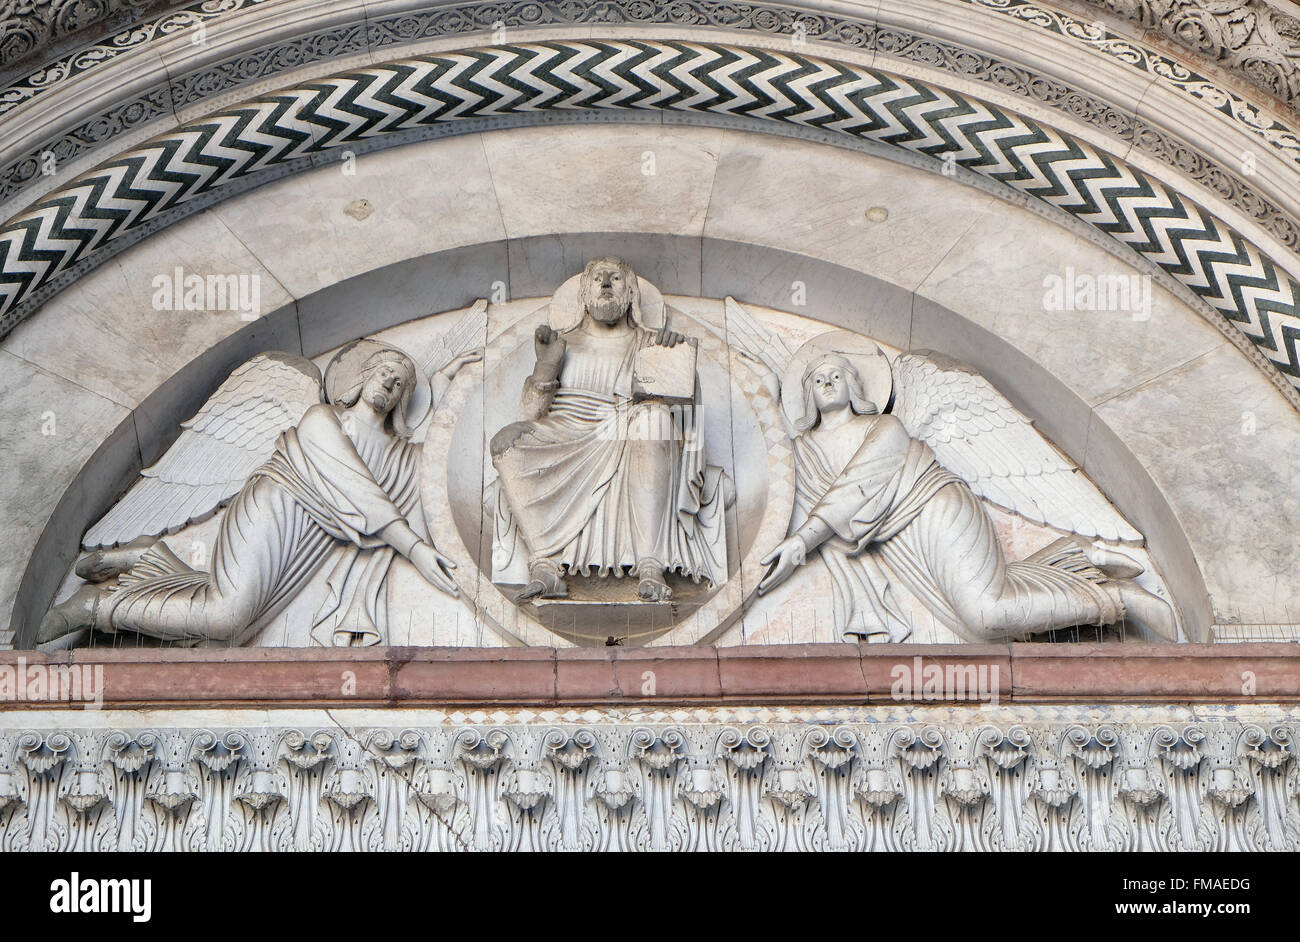 Kathedrale von St. Martin in Lucca. Lünette zeigt den Erlöser in einer Mandorla, gehalten von zwei Engeln, Lucca, Italien Stockfoto